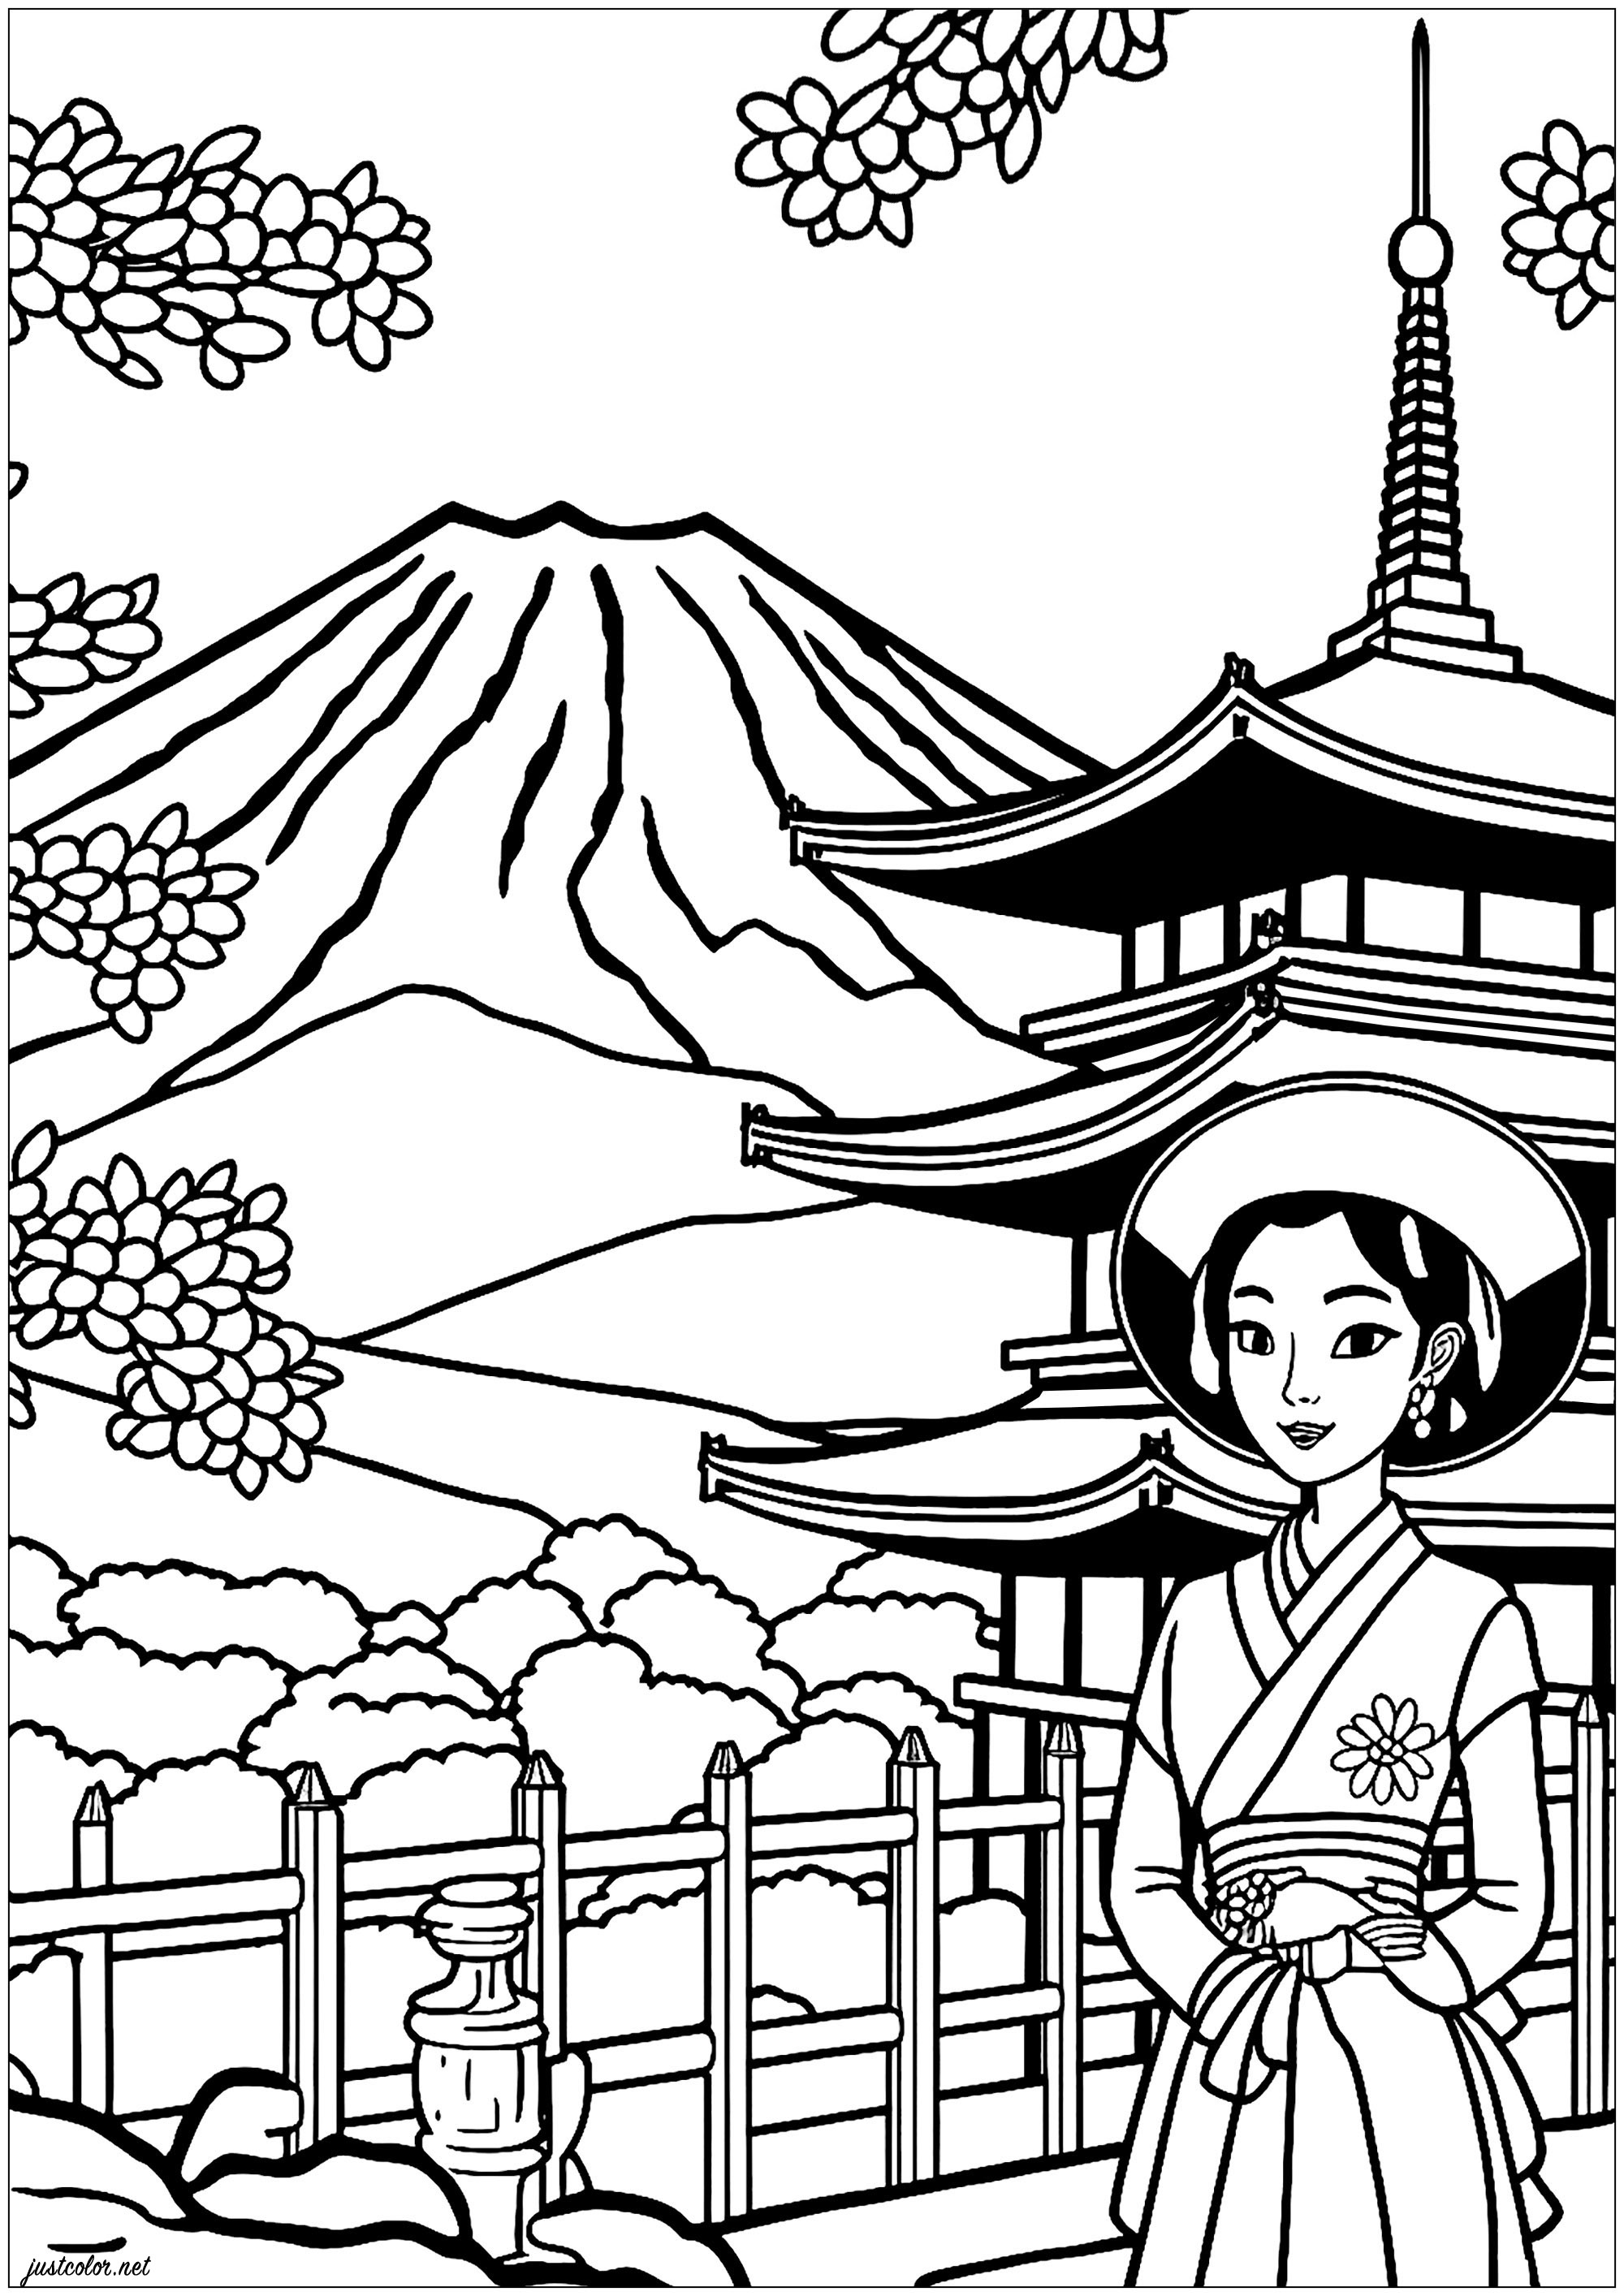 Colorear a una joven geisha. En el fondo, relajarse profundamente colorear hermoso templo japonés y el Monte Fuji.